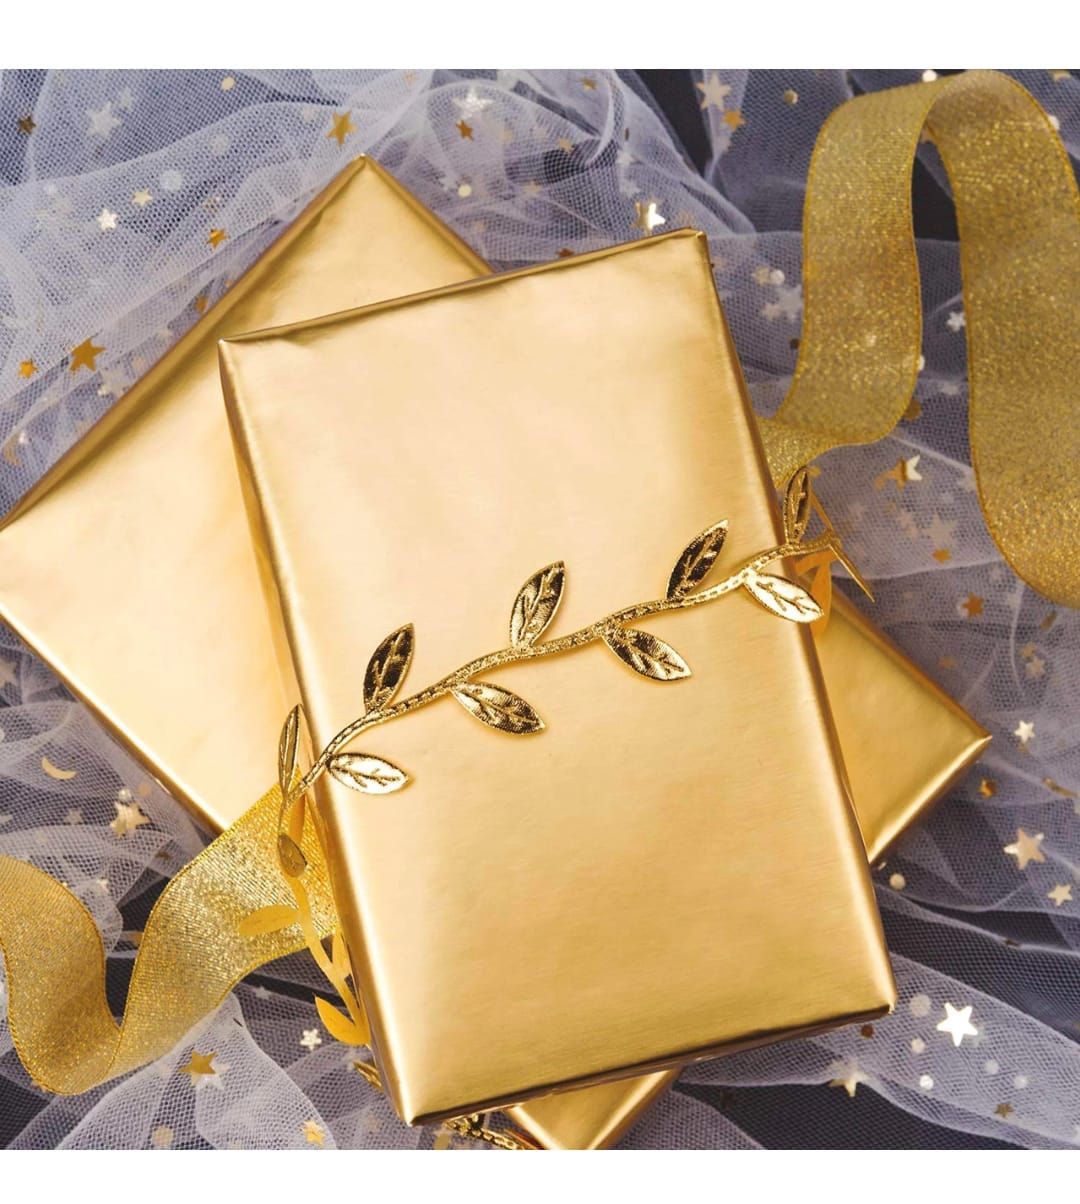 Gift Wraps – Itsy Bitsy